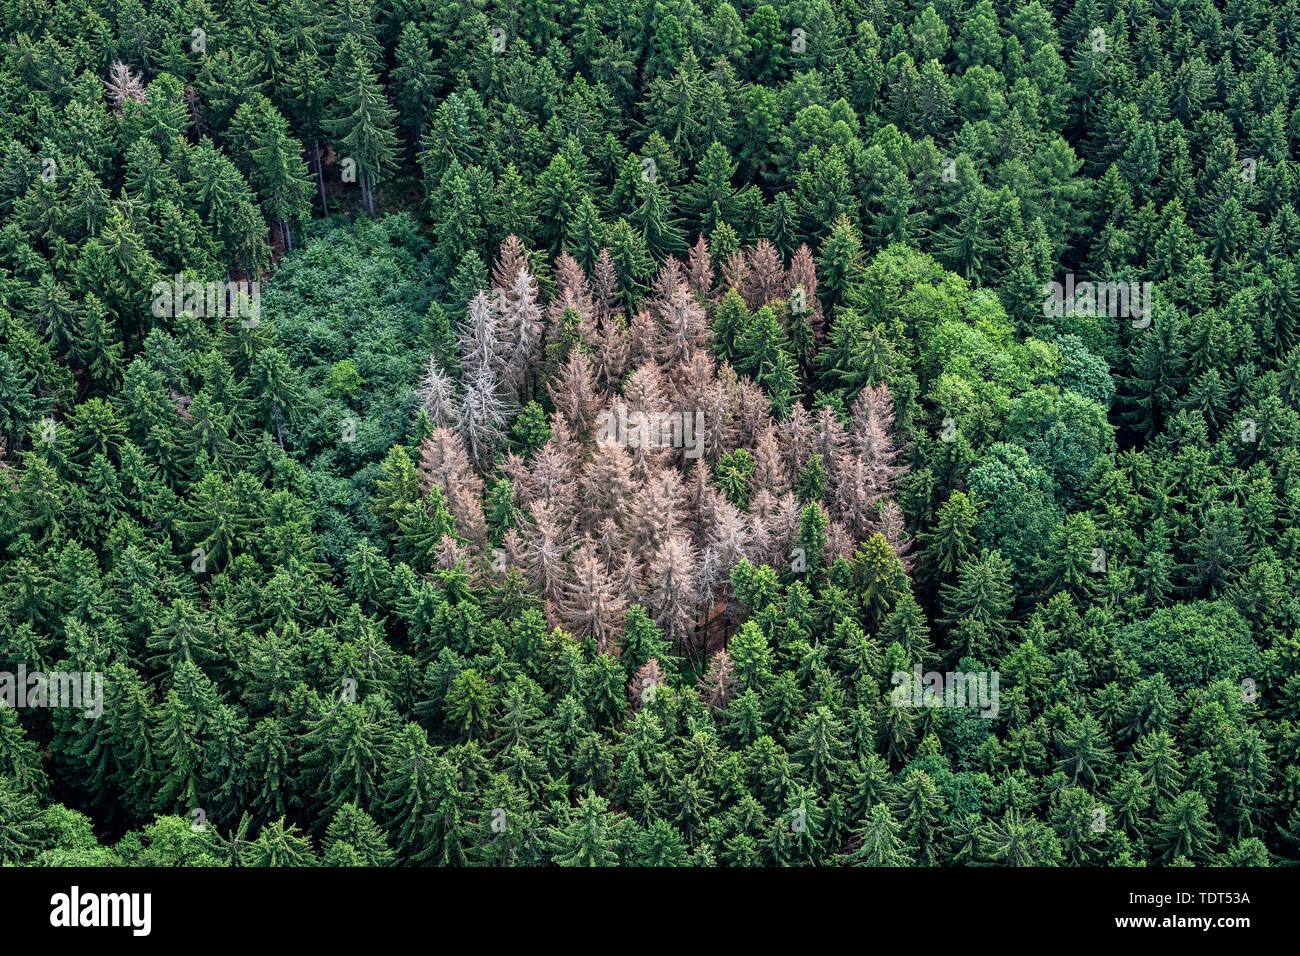 Au moins 500 000 hectares de forêts d'épinettes en République tchèque, qui est environ la moitié de leur superficie totale dans le pays, peuvent être infestées par le bostryche et dans le pire des cas cette année, le ministre de l'environnement Richard Brabec a déclaré lors d'une réunion avec les maires des municipalités dans la région de Bohême centrale, en République tchèque, le 18 juin 2019. Lesy CR du résultat net de l'exploitation forestière comp plongé à KC70m en 2018, à partir de 2017's Kc3.08bn en raison de la chute des prix du bois causées par les infestations de dendroctones. (CTK Photo/David Tanecek) Banque D'Images